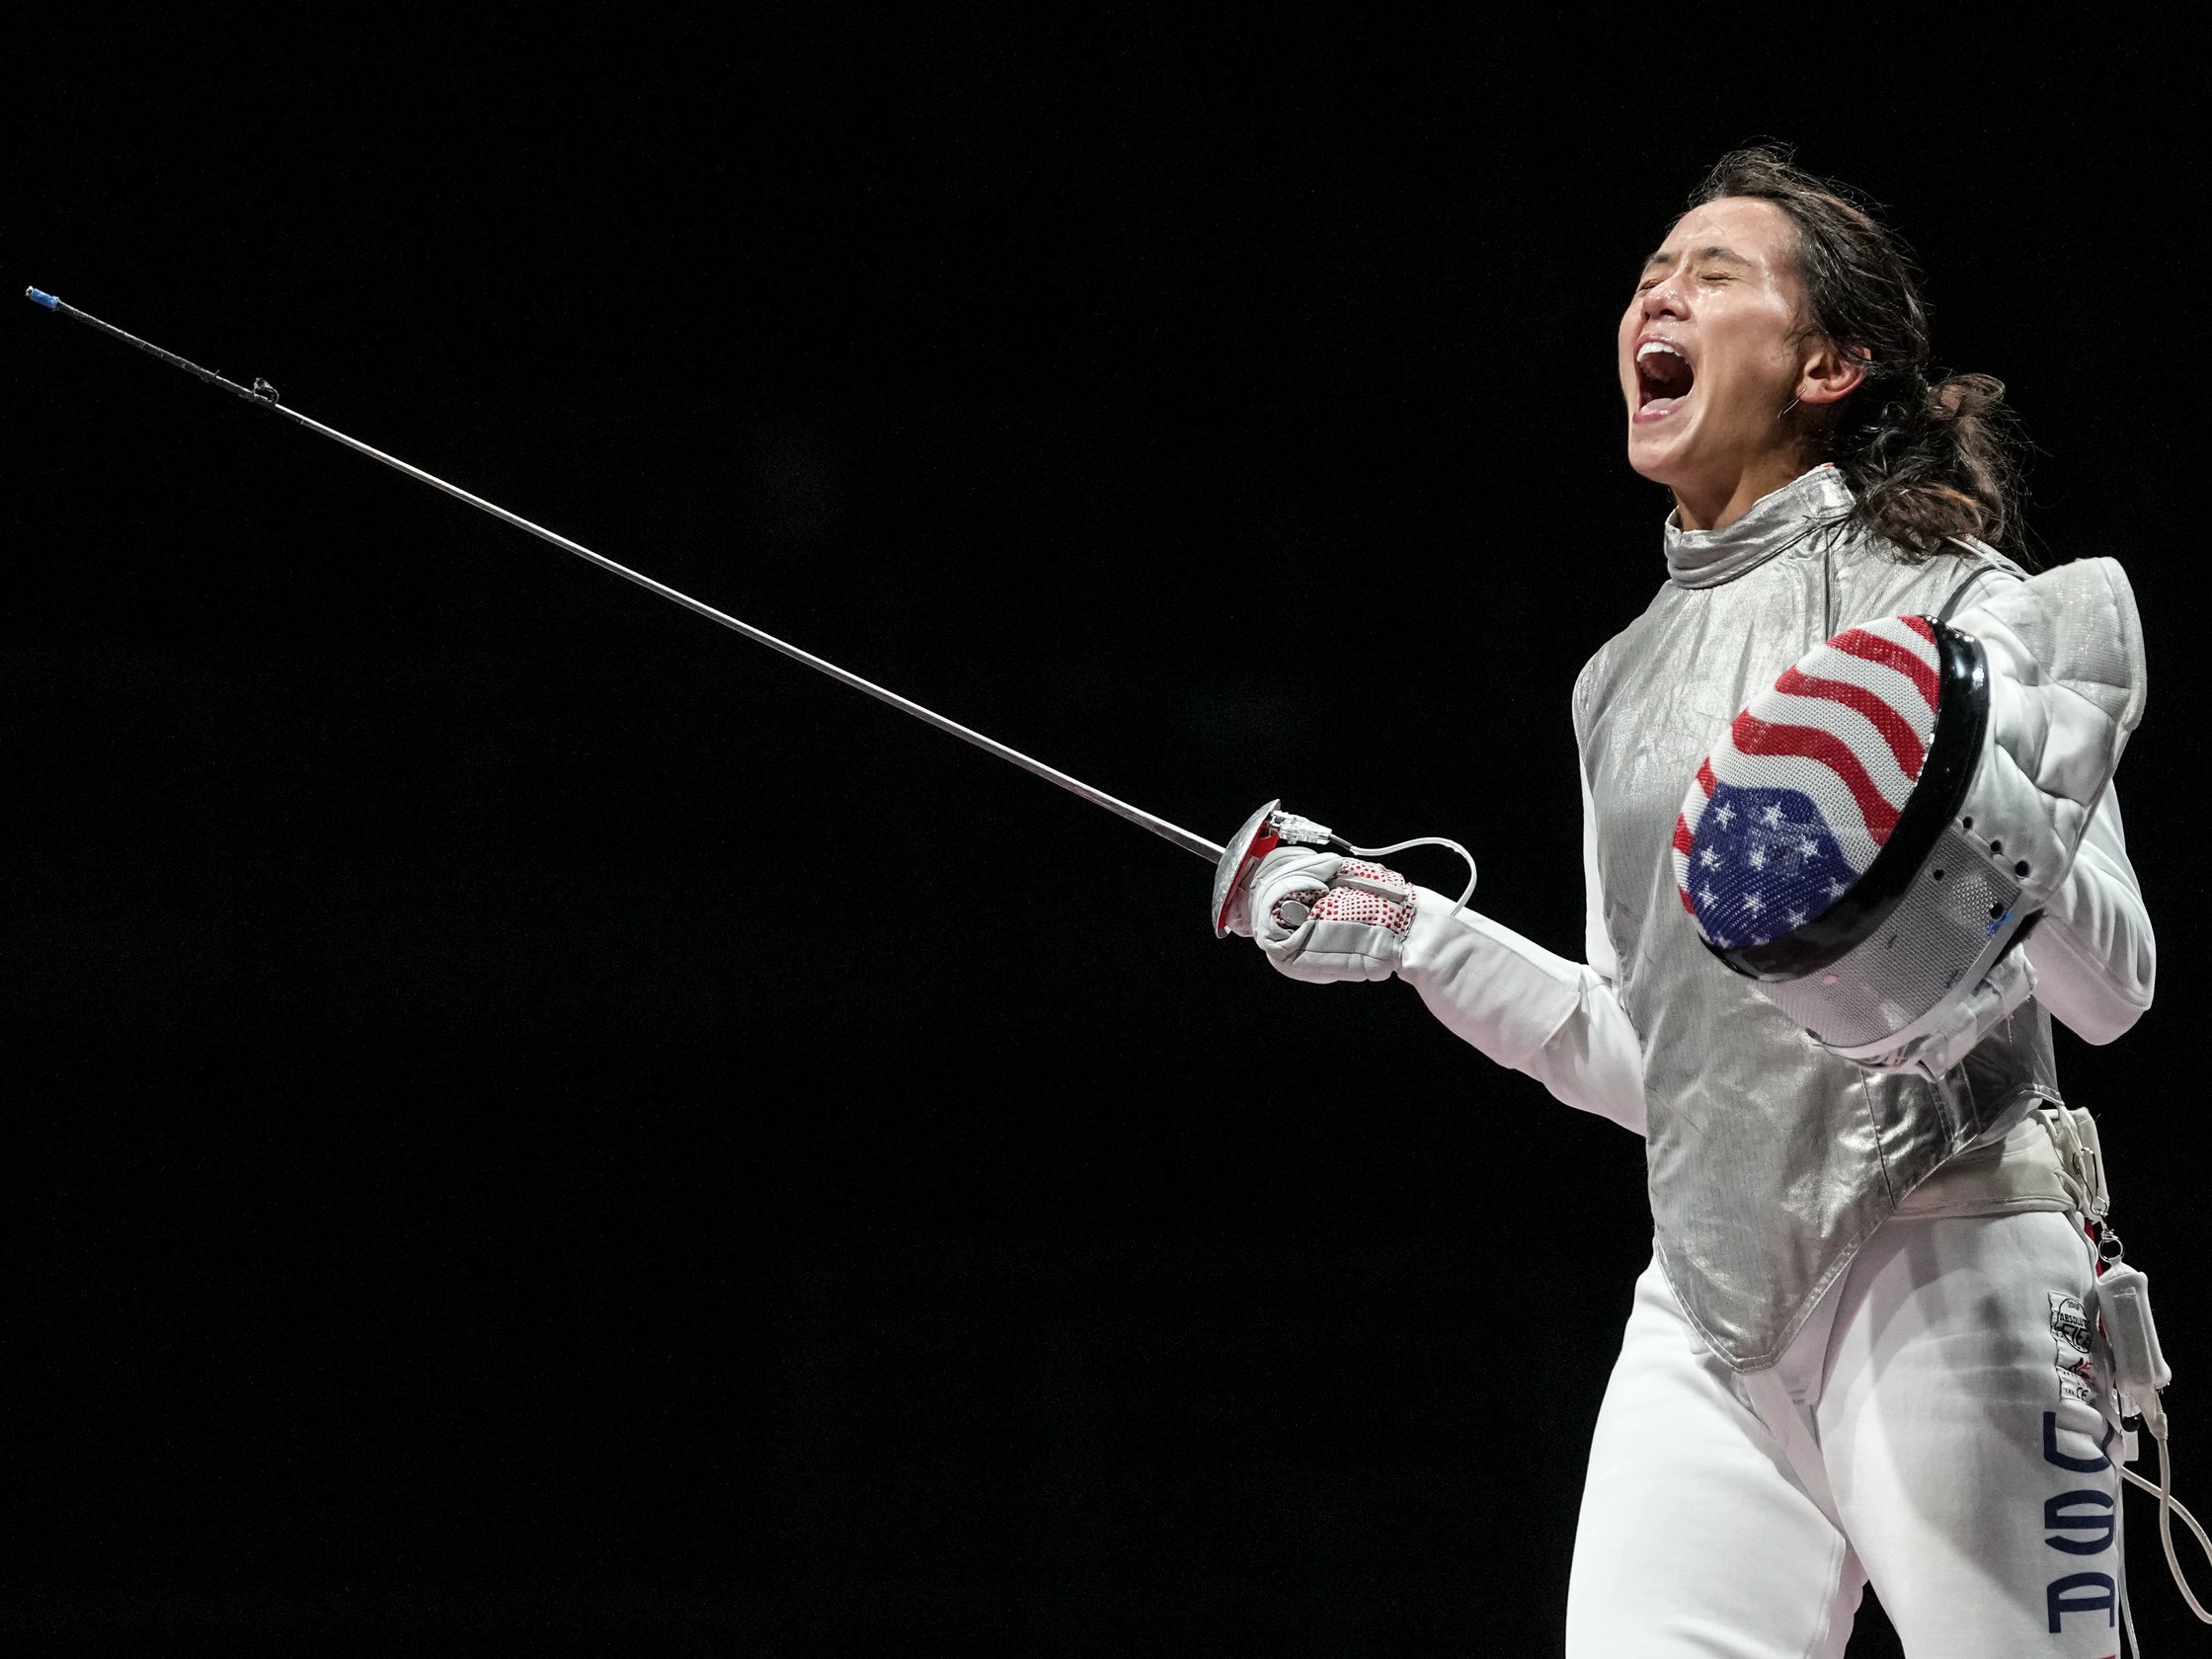 Lee Kiefer, 2020 Tokyo Olympics, foil fencing